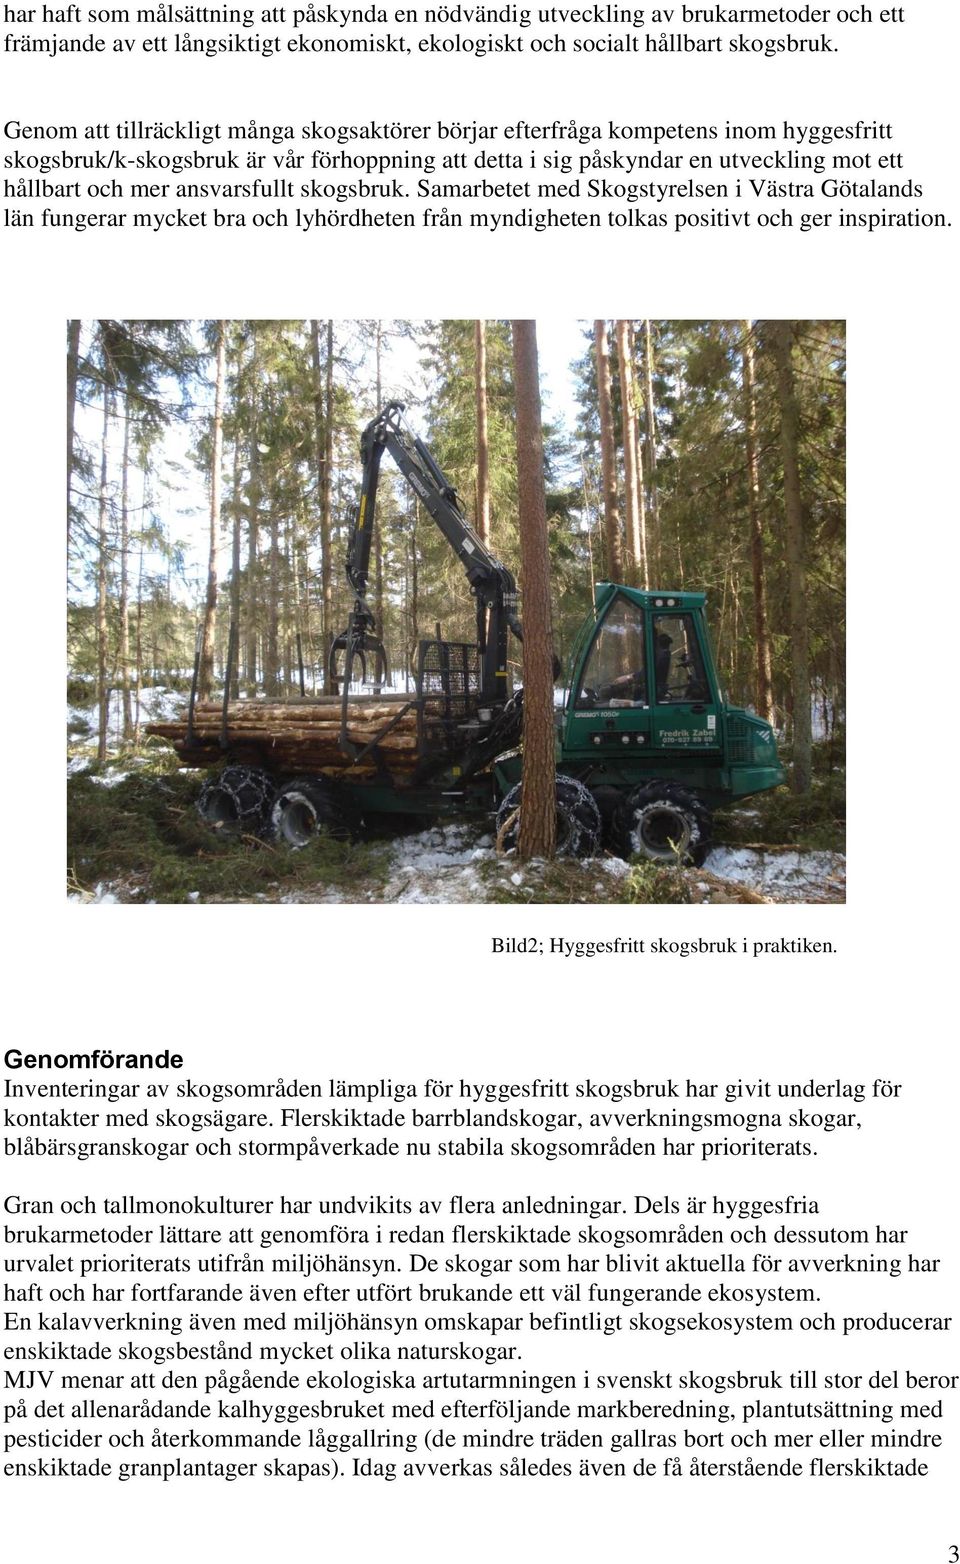 ansvarsfullt skogsbruk. Samarbetet med Skogstyrelsen i Västra Götalands län fungerar mycket bra och lyhördheten från myndigheten tolkas positivt och ger inspiration.